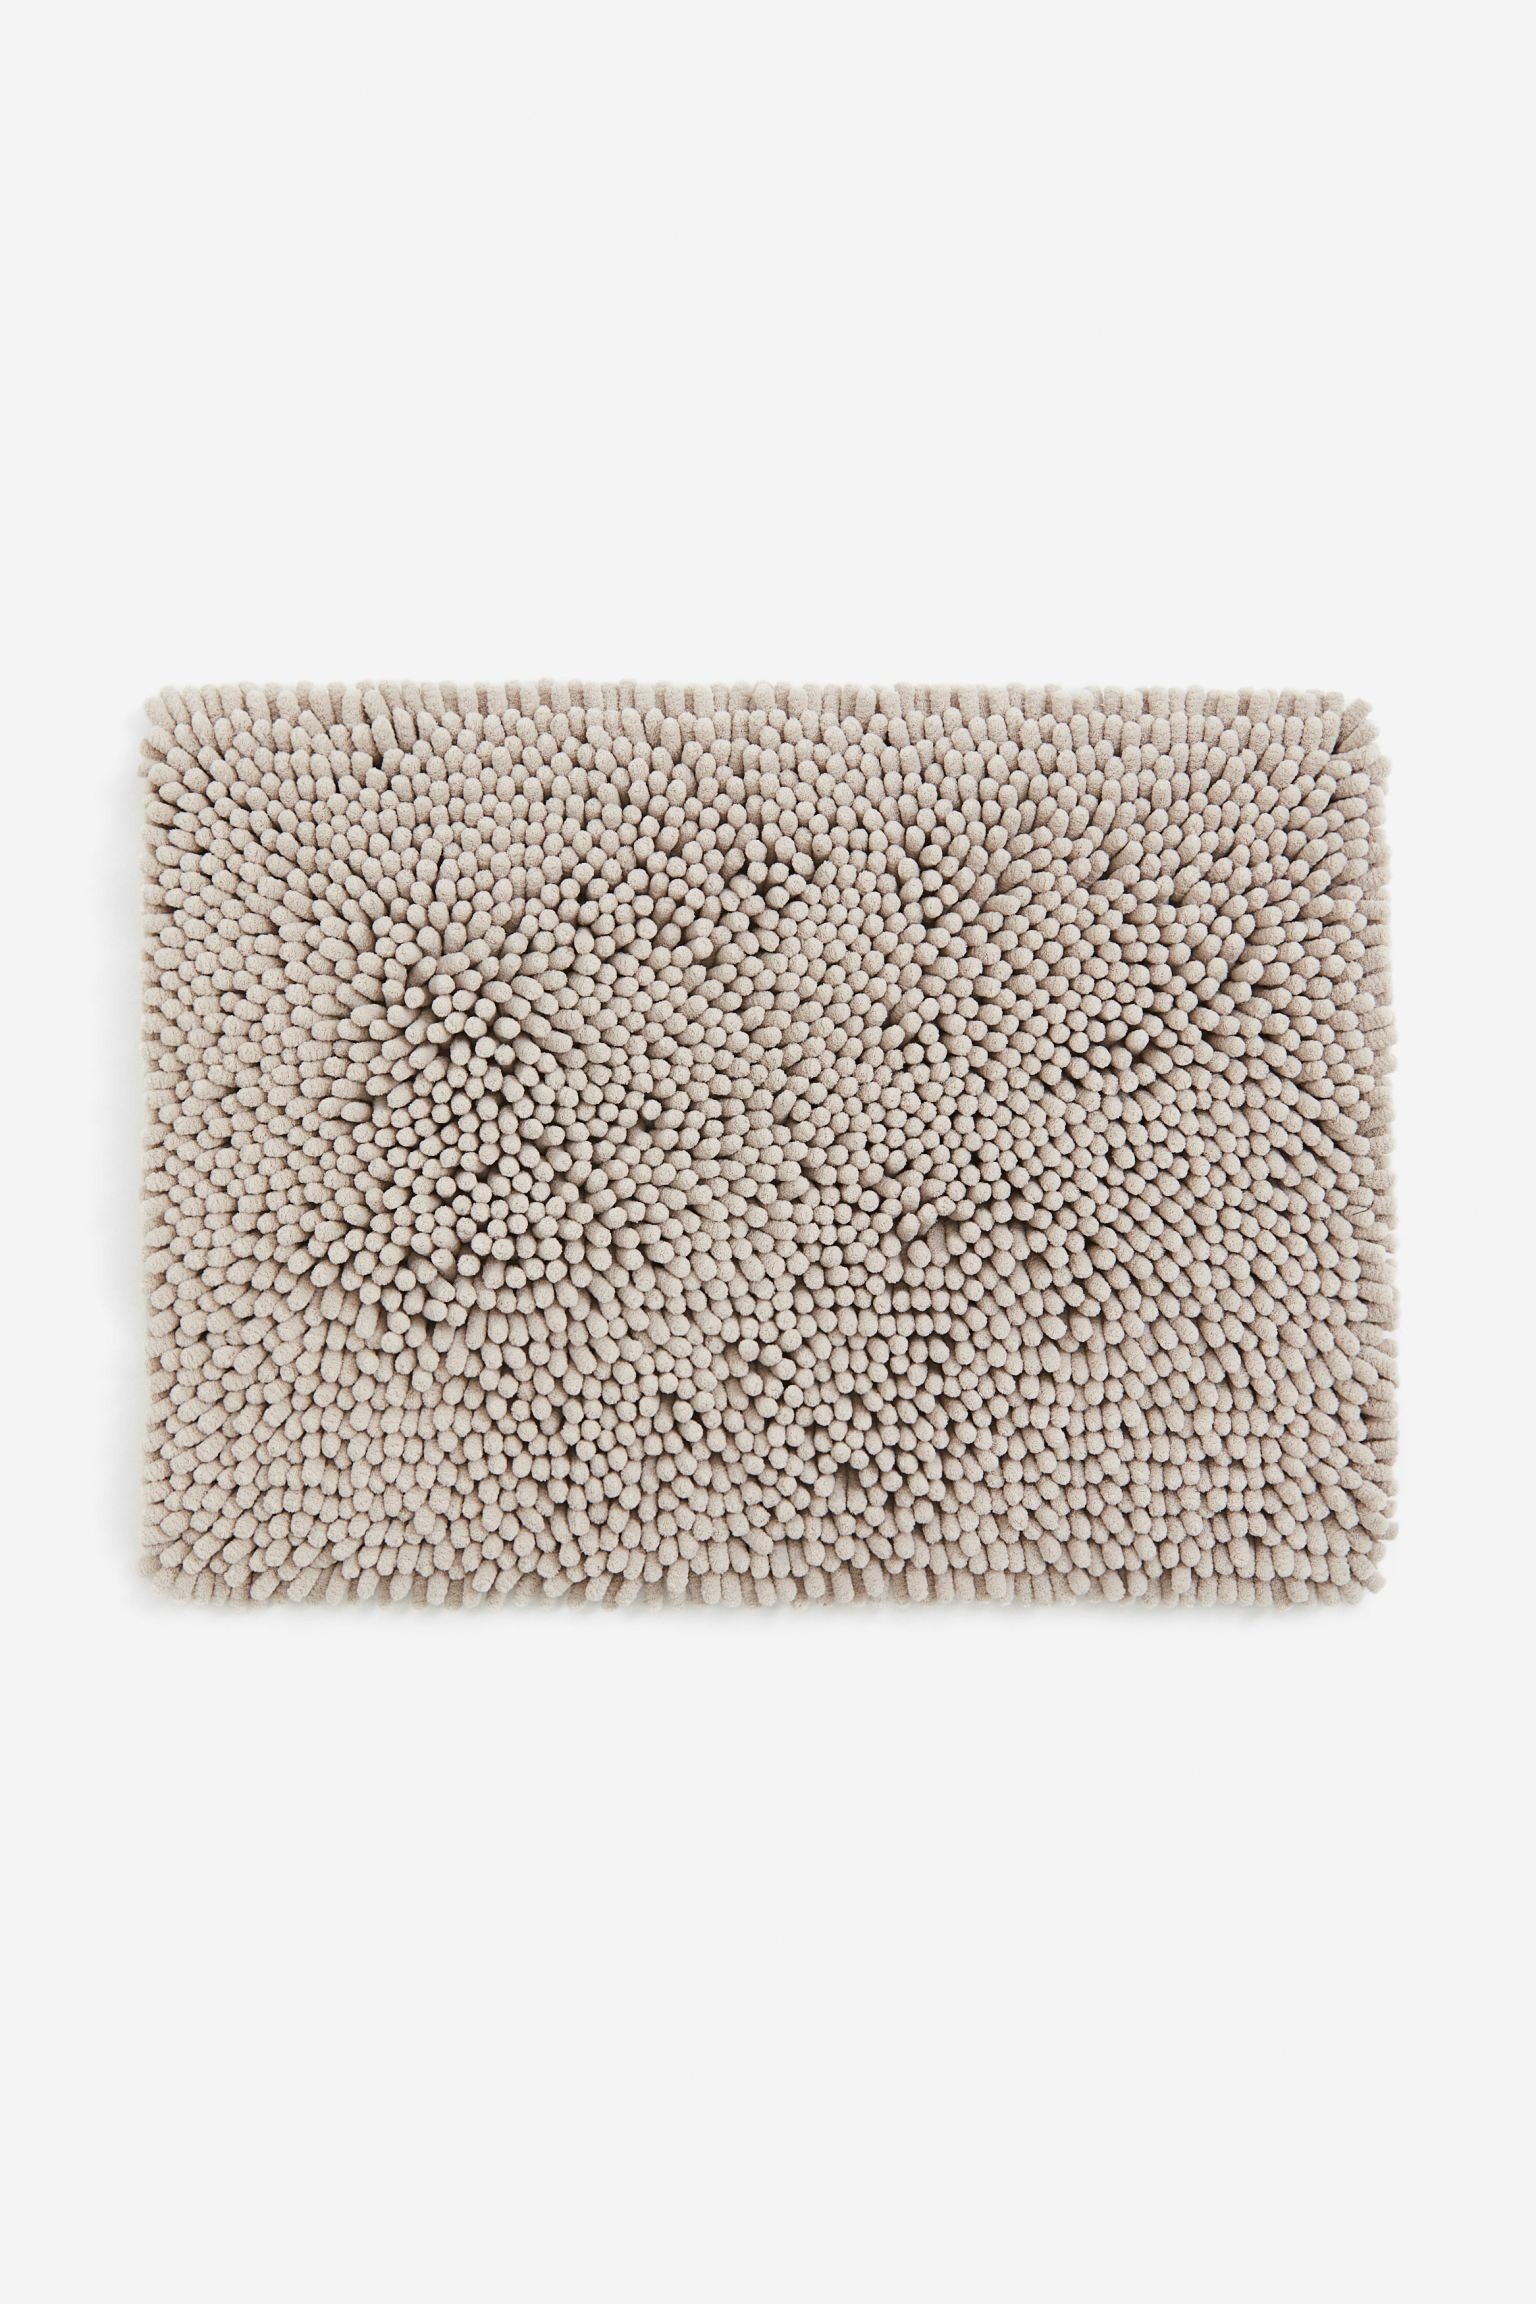 Пушистый коврик для ванной, Грейдж, 50x70